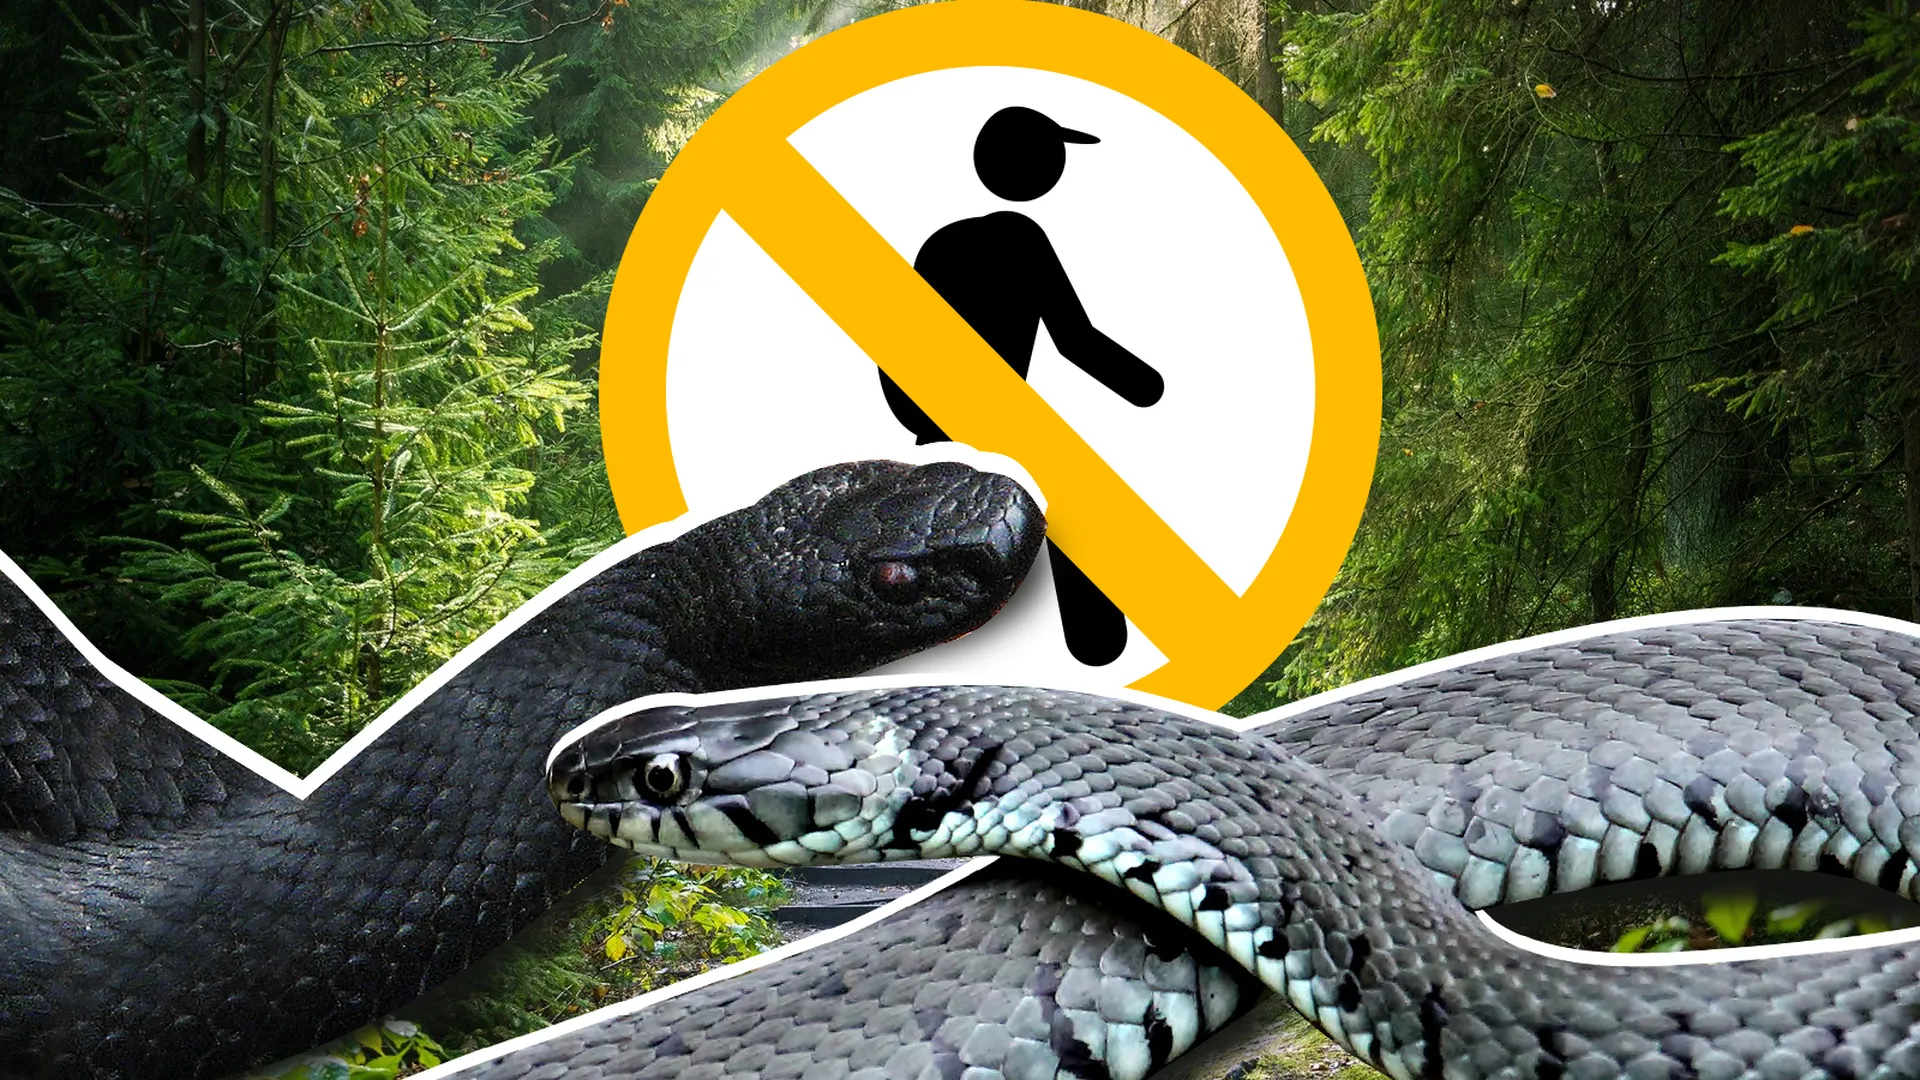 Про змеиный. Опасные змеи в лесу. Миграция змей. Про змей для детей.